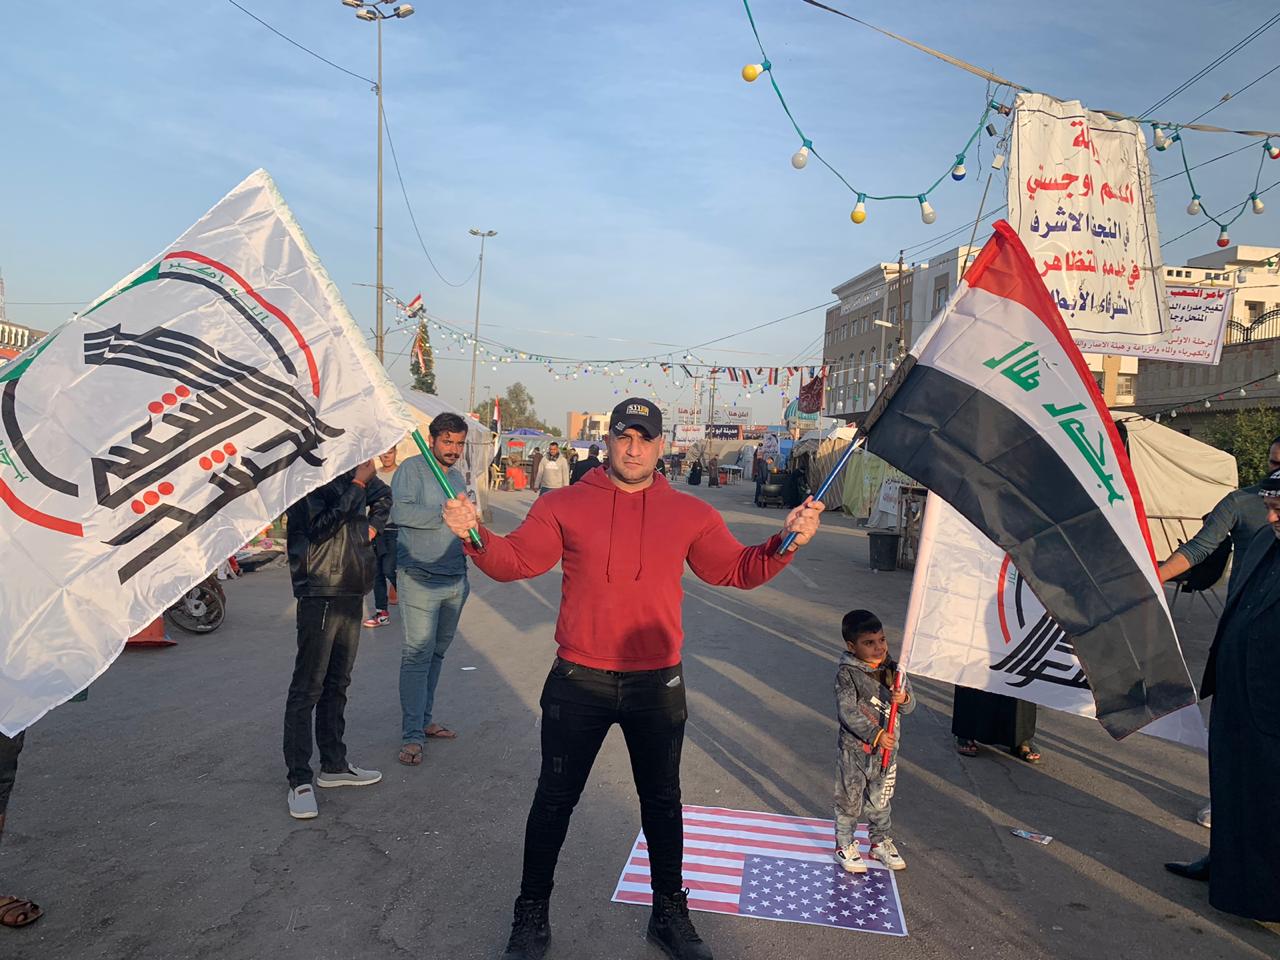 بالصور : متظاهرون يحرقون العلم الامريكي وسط ساحة الصدرين في النجف ويرفعون علم العراق والحشد الشعبي